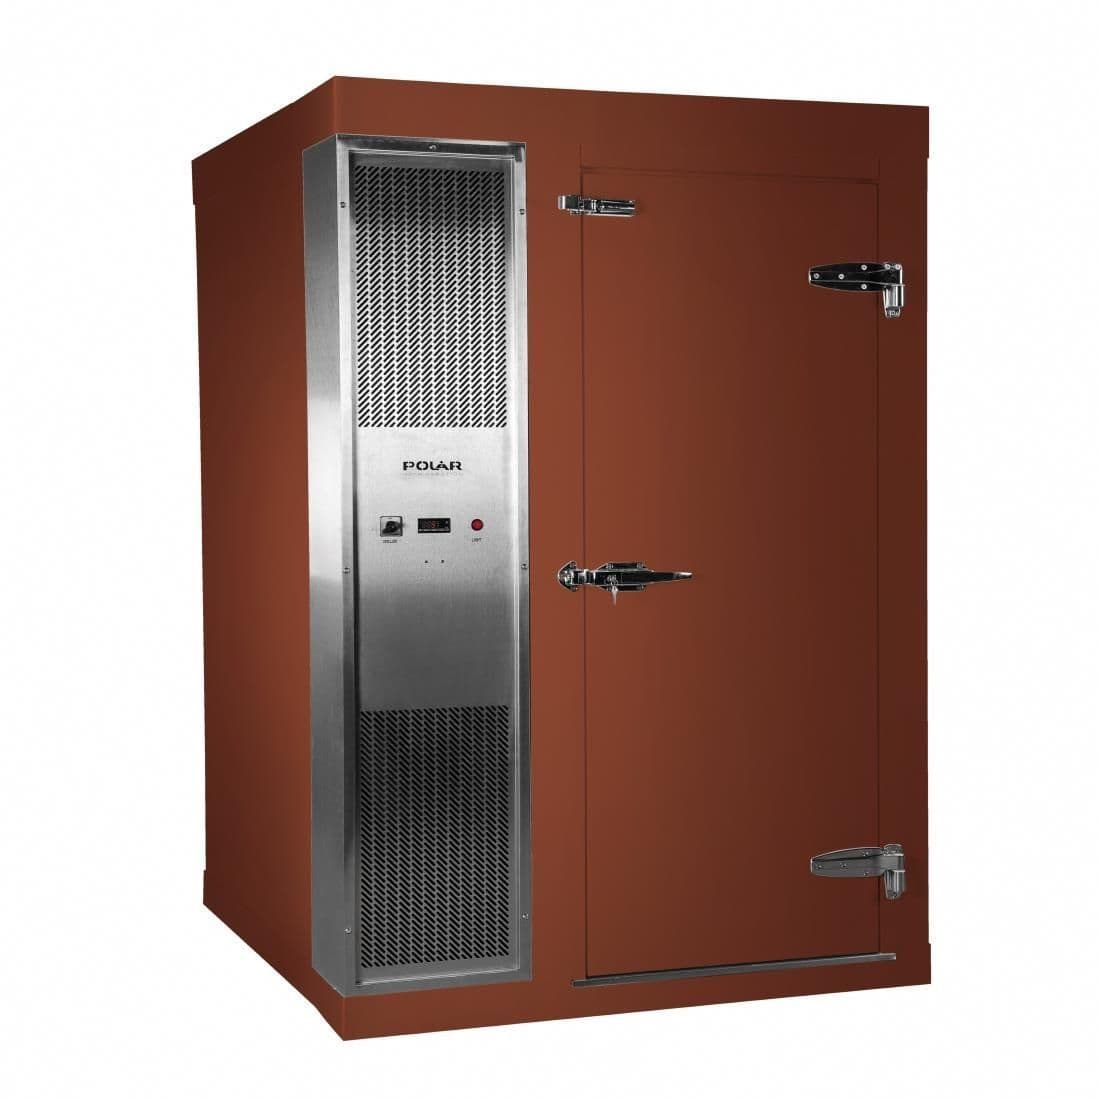 DS481-FBN Polar U-Series 1.5 x 1.2m Integral Walk In Freezer Room Brown JD Catering Equipment Solutions Ltd